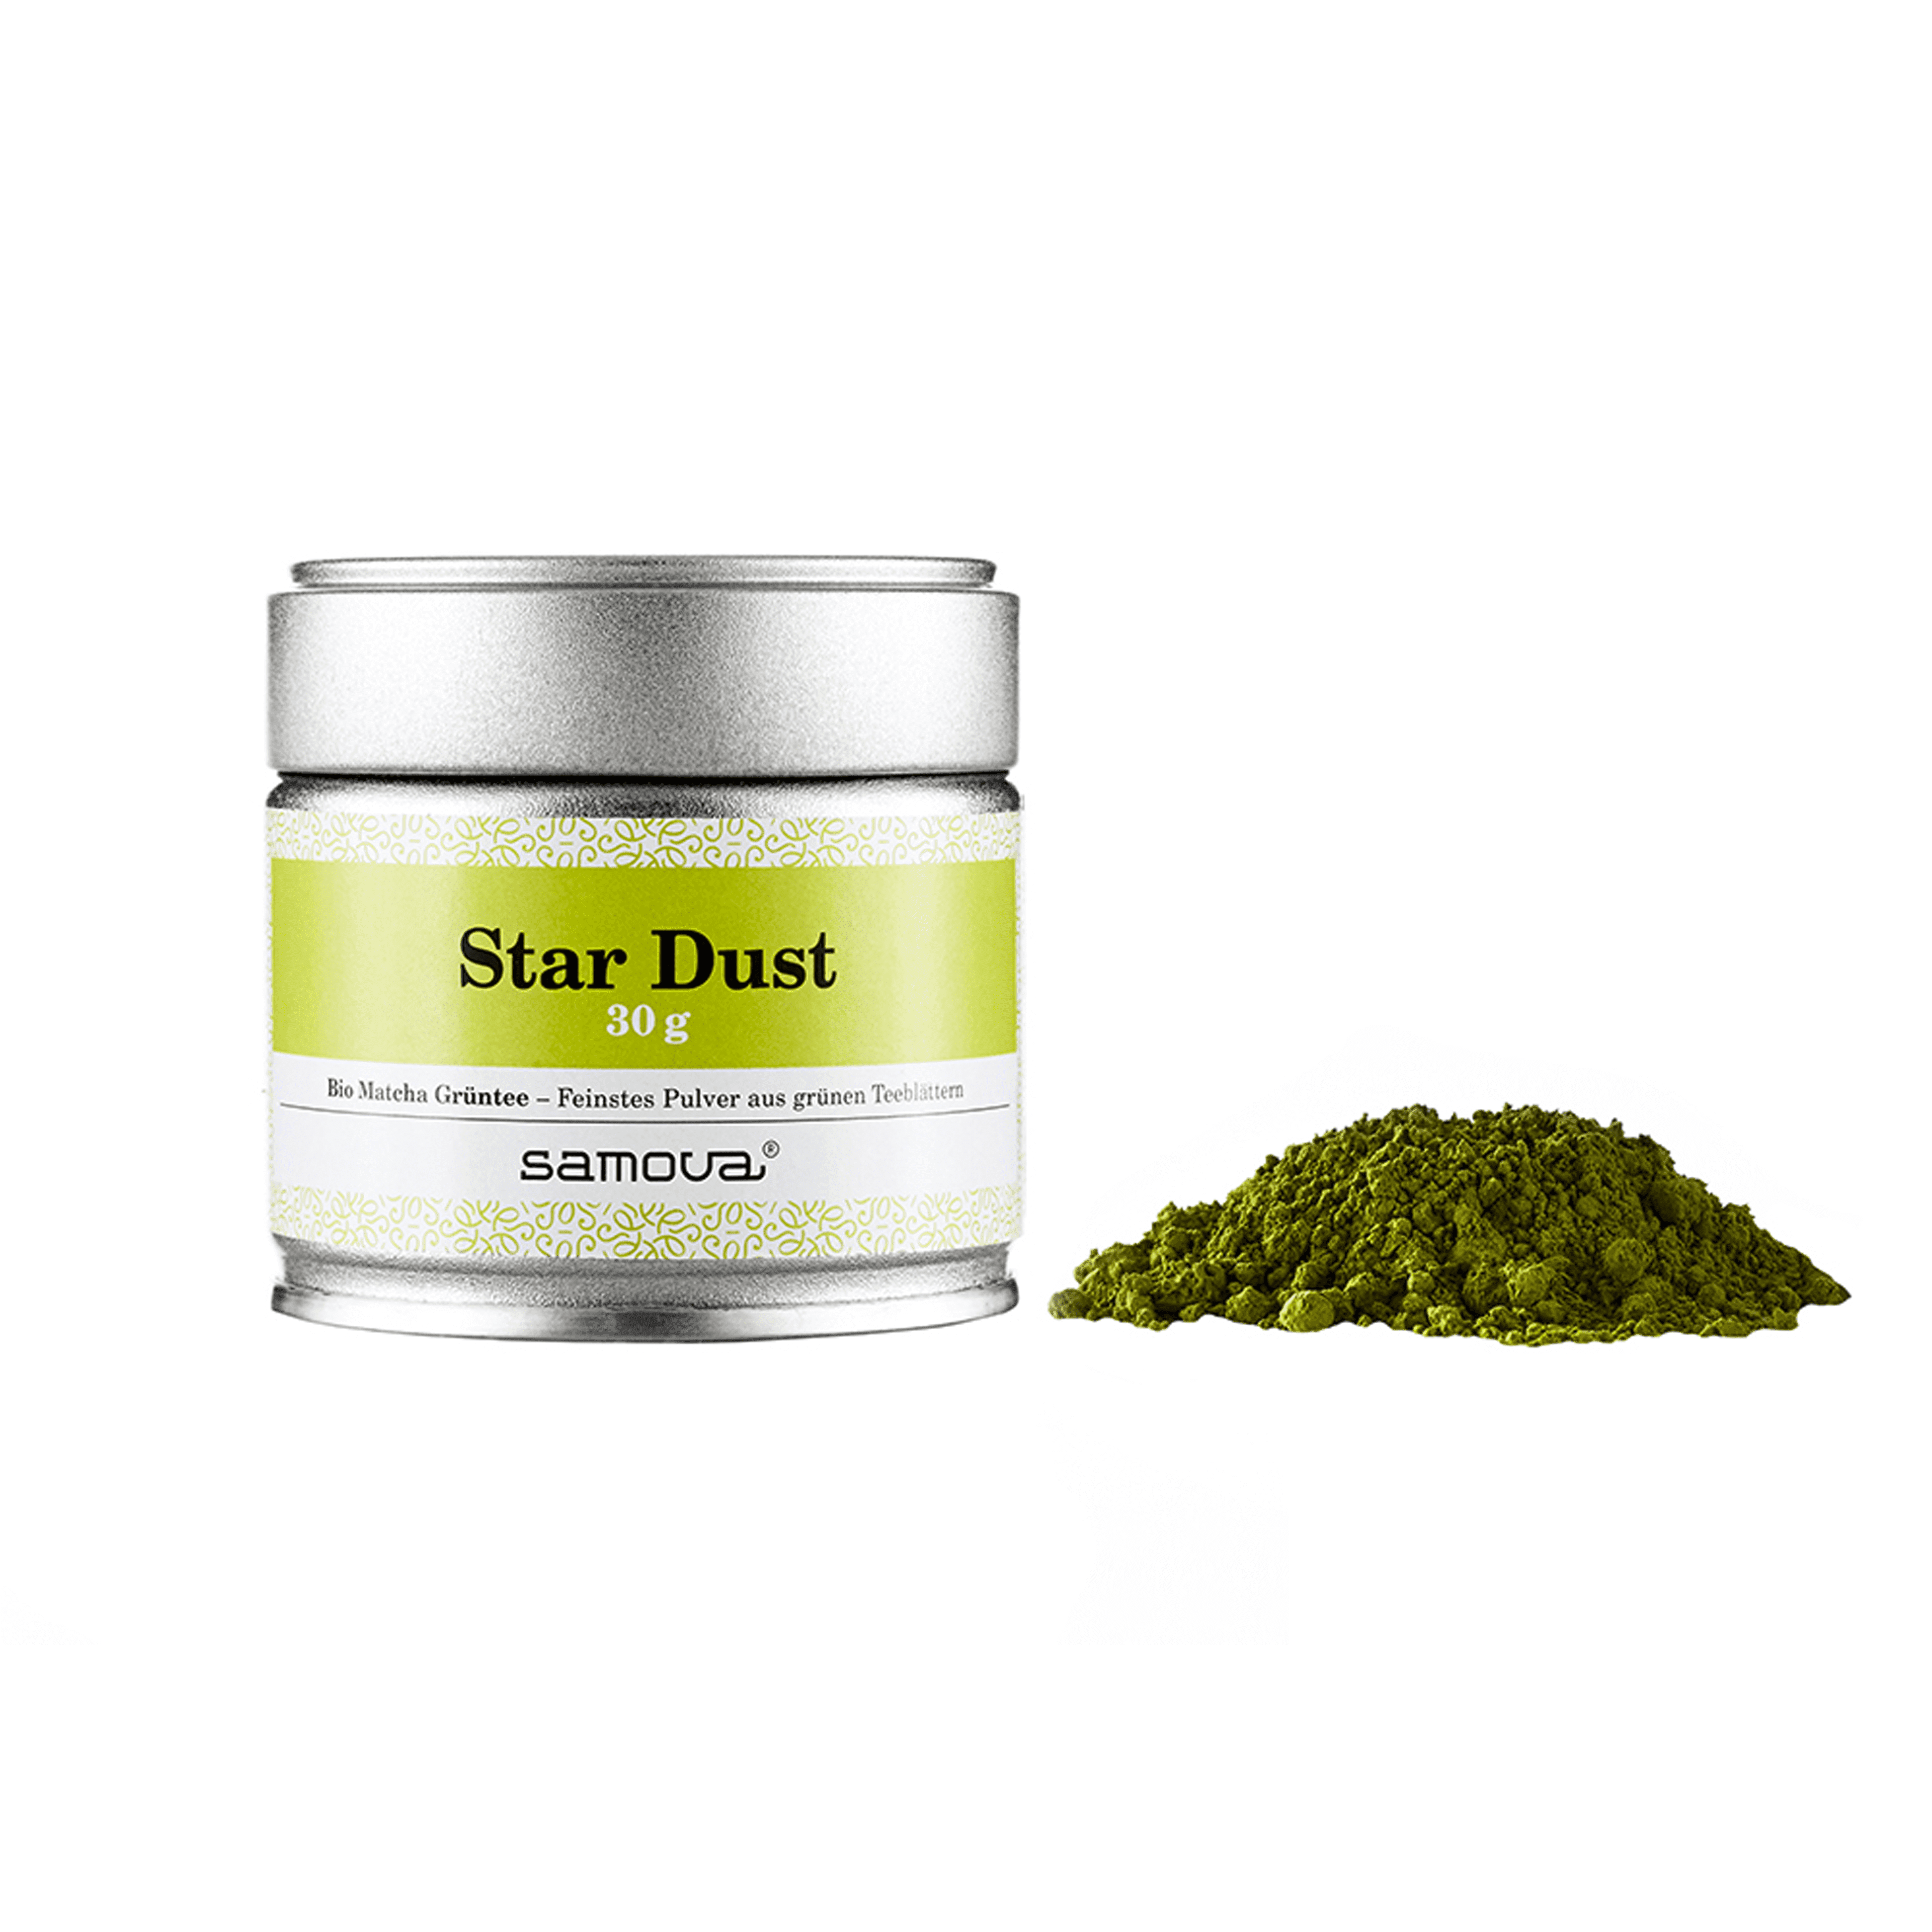 Canette de thé Star Dust - Thé vert matcha bio